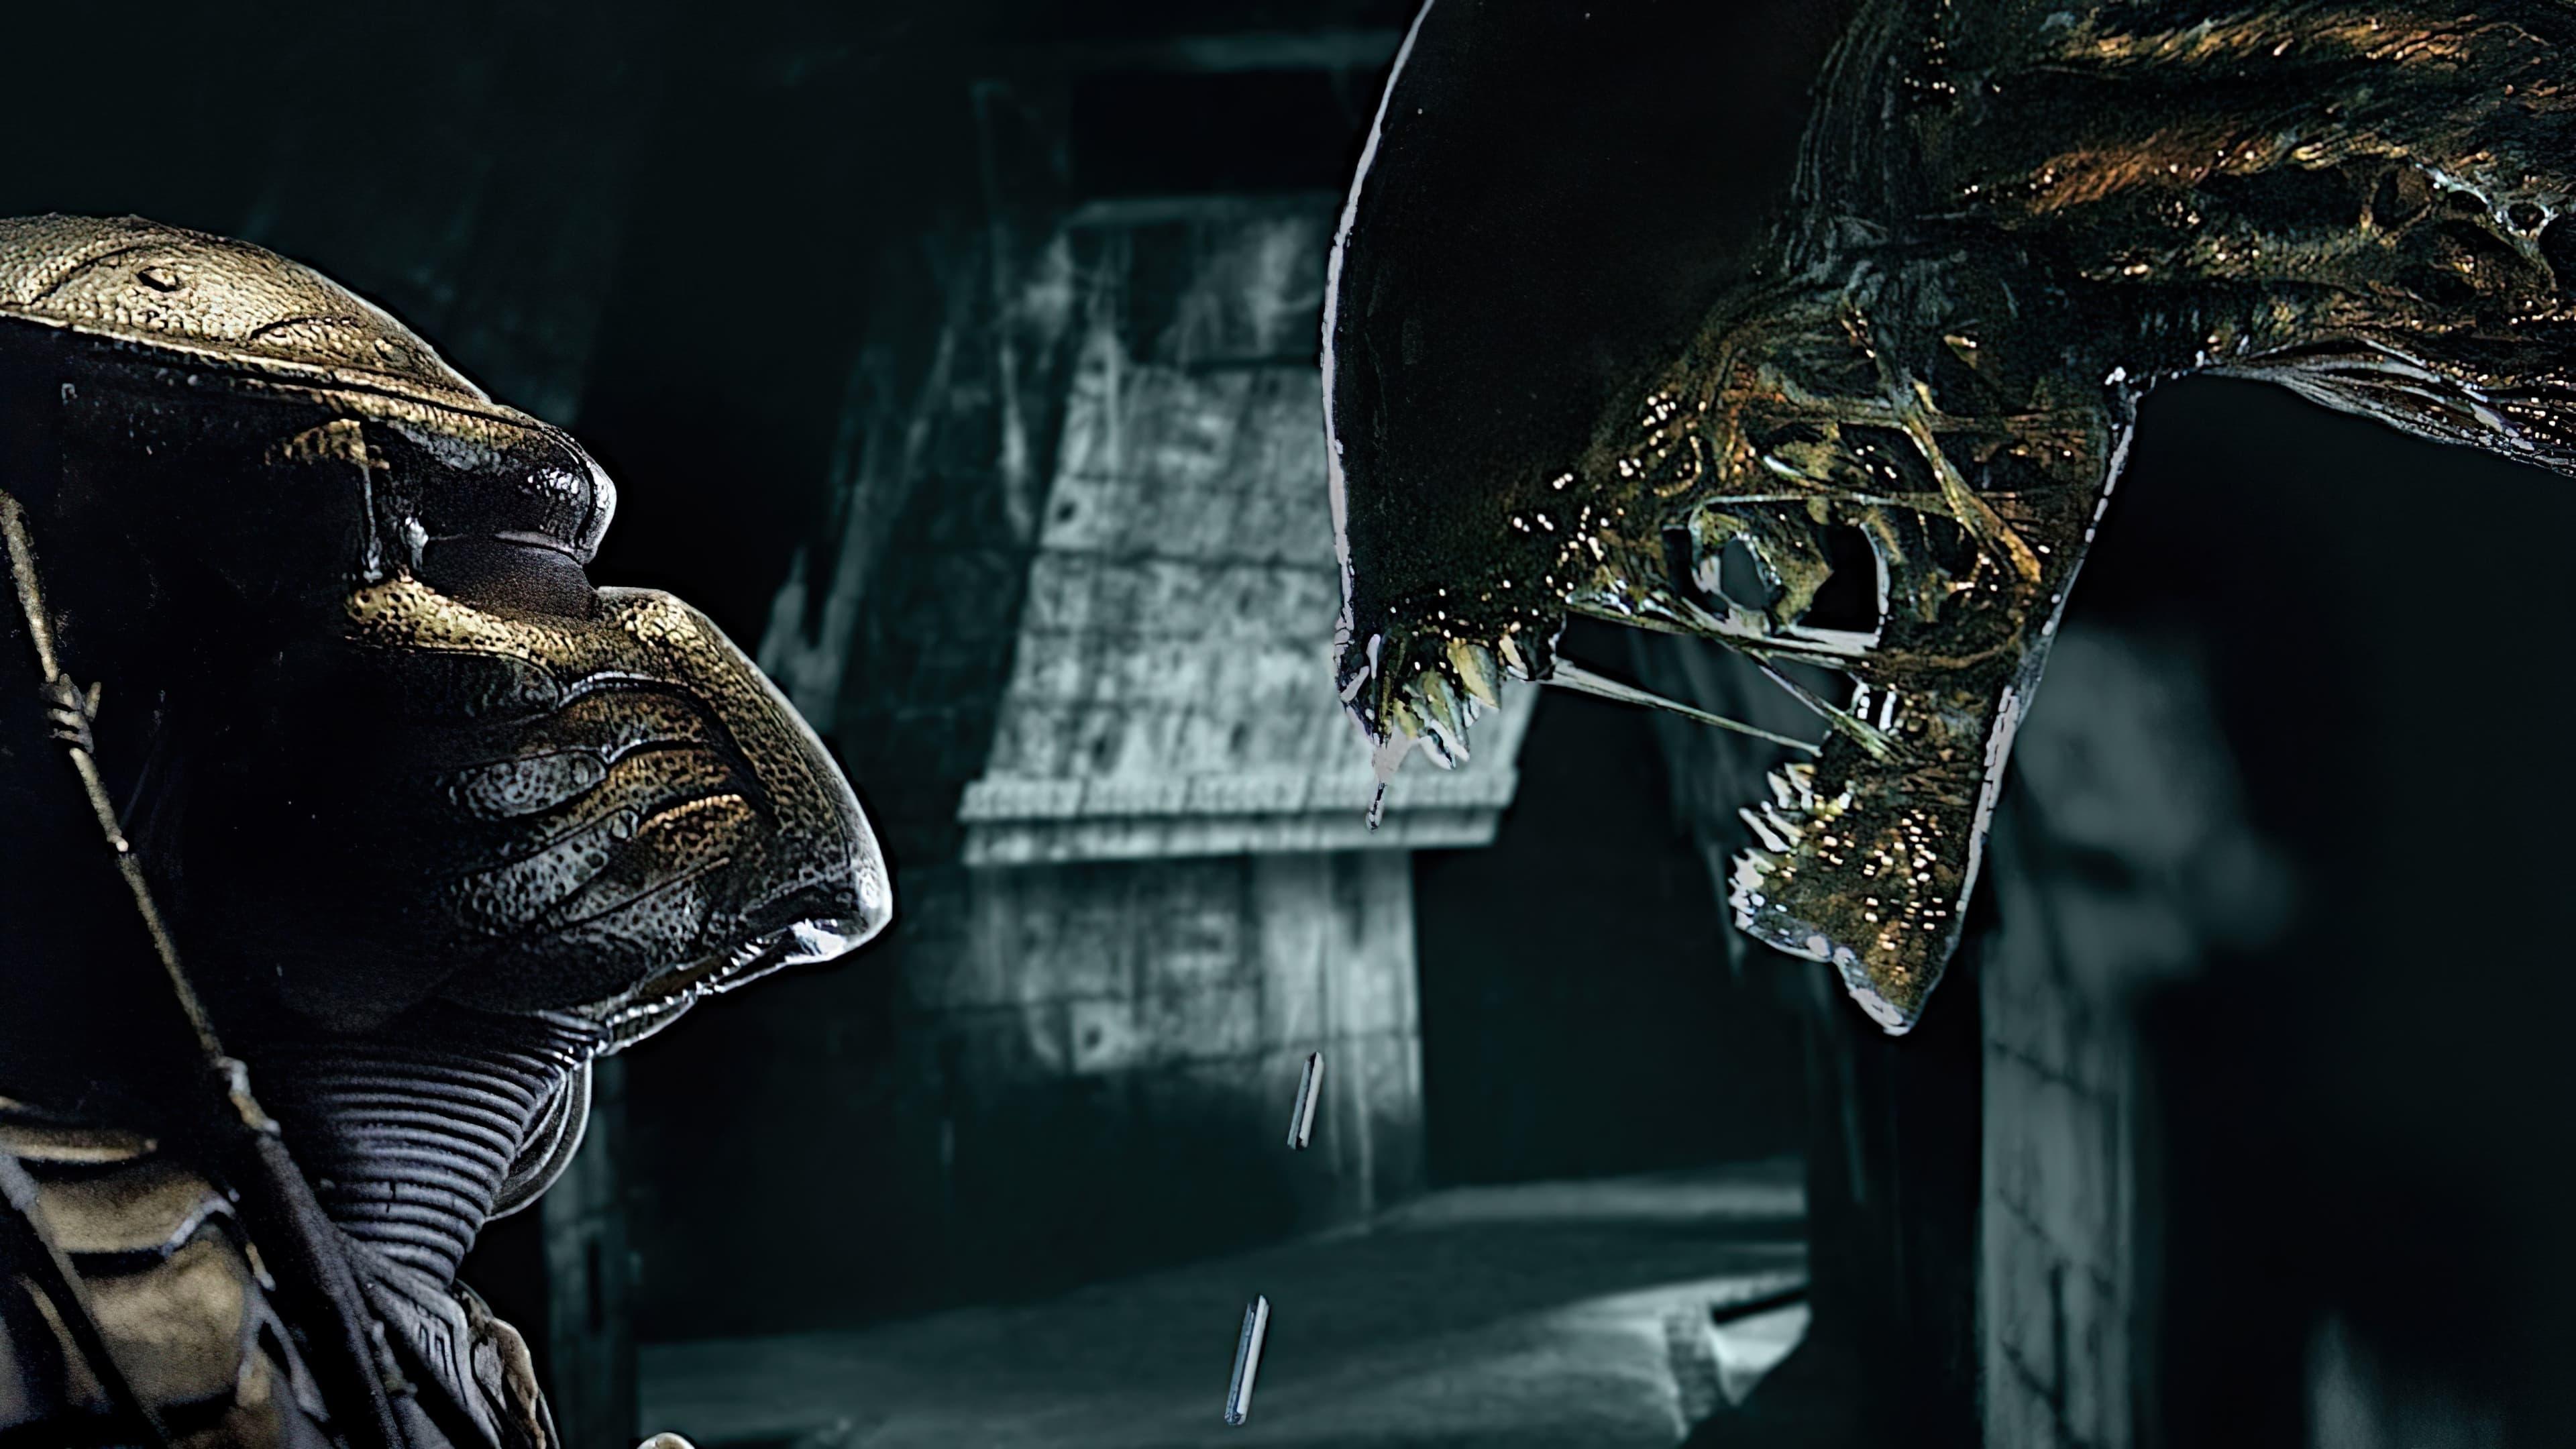 AVP: Alien vs. Predator backdrop